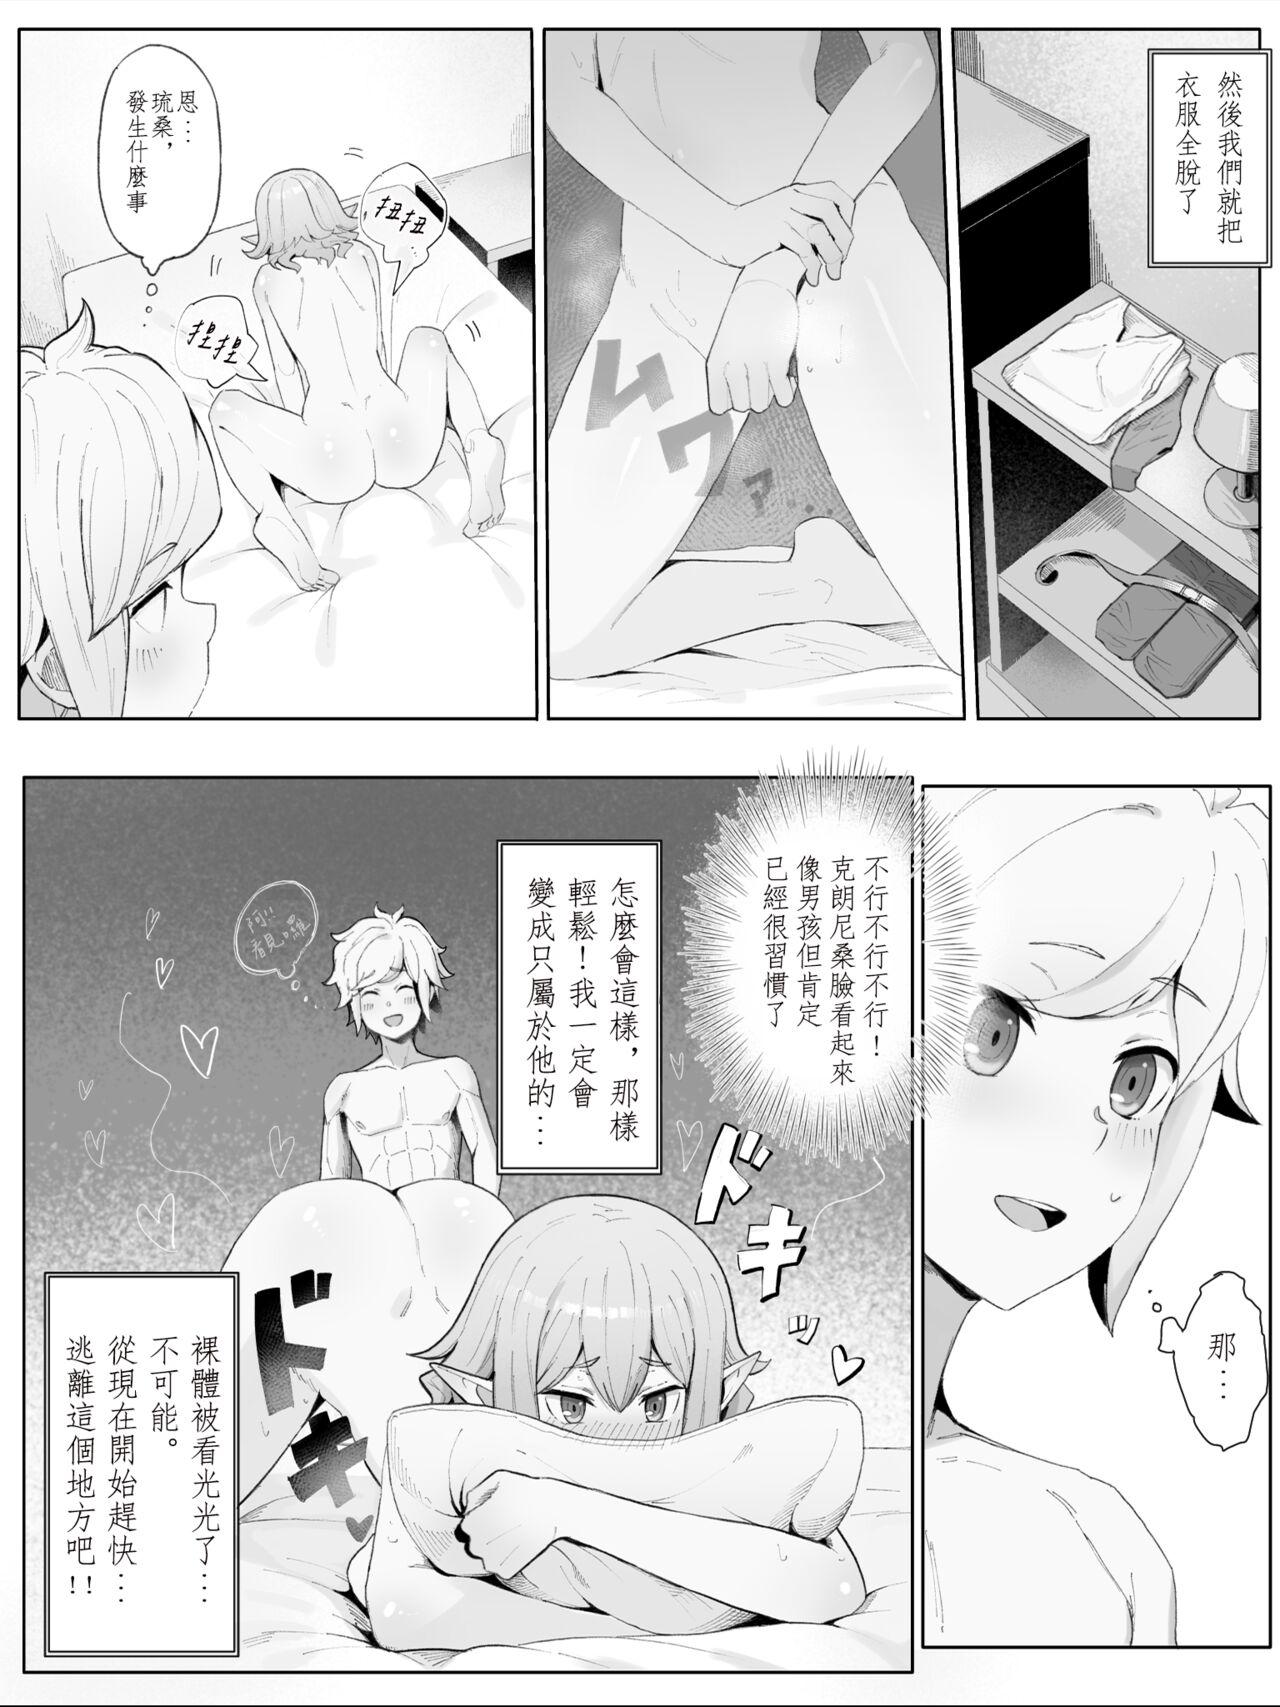 Swallowing Bell Ryuu Ecchi na Manga - Dungeon ni deai o motomeru no wa machigatteiru darou ka Amatuer Sex - Page 9